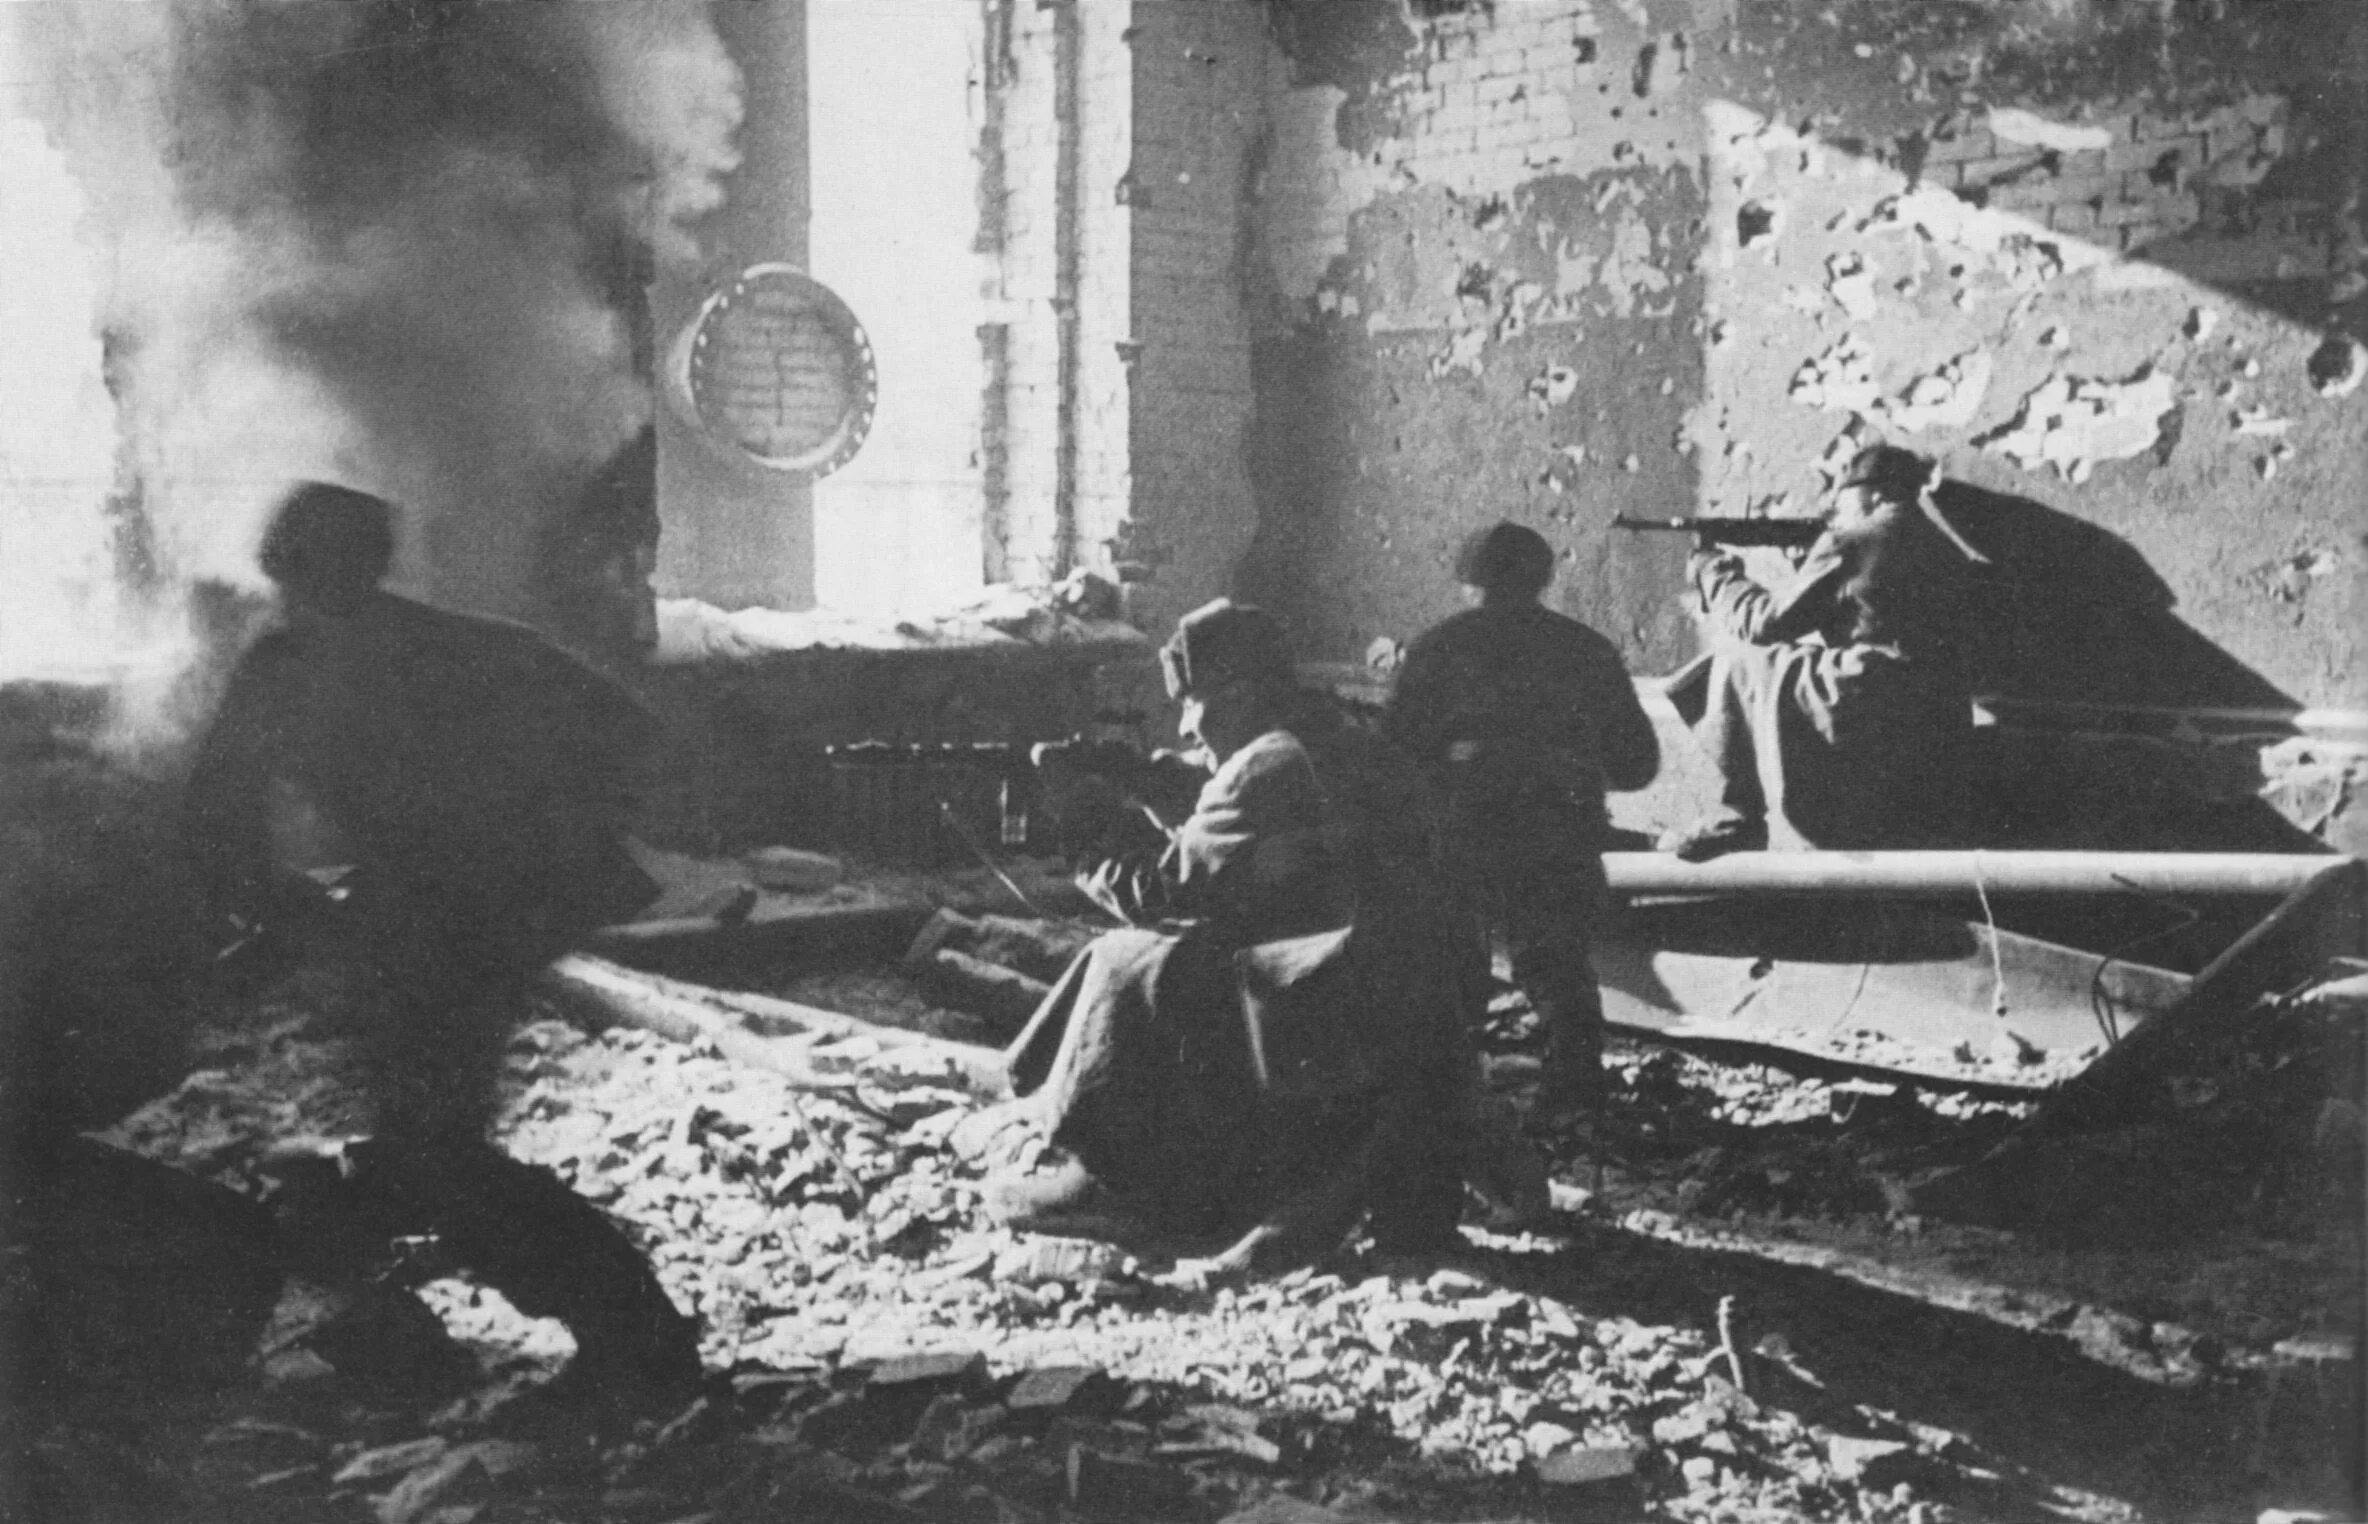 Защитники города сталинграда. Сталинградская битва в районе завода красный октябрь. Защита Сталинграда в 1942 году. Октябрь 1942 года Сталинградская битва.